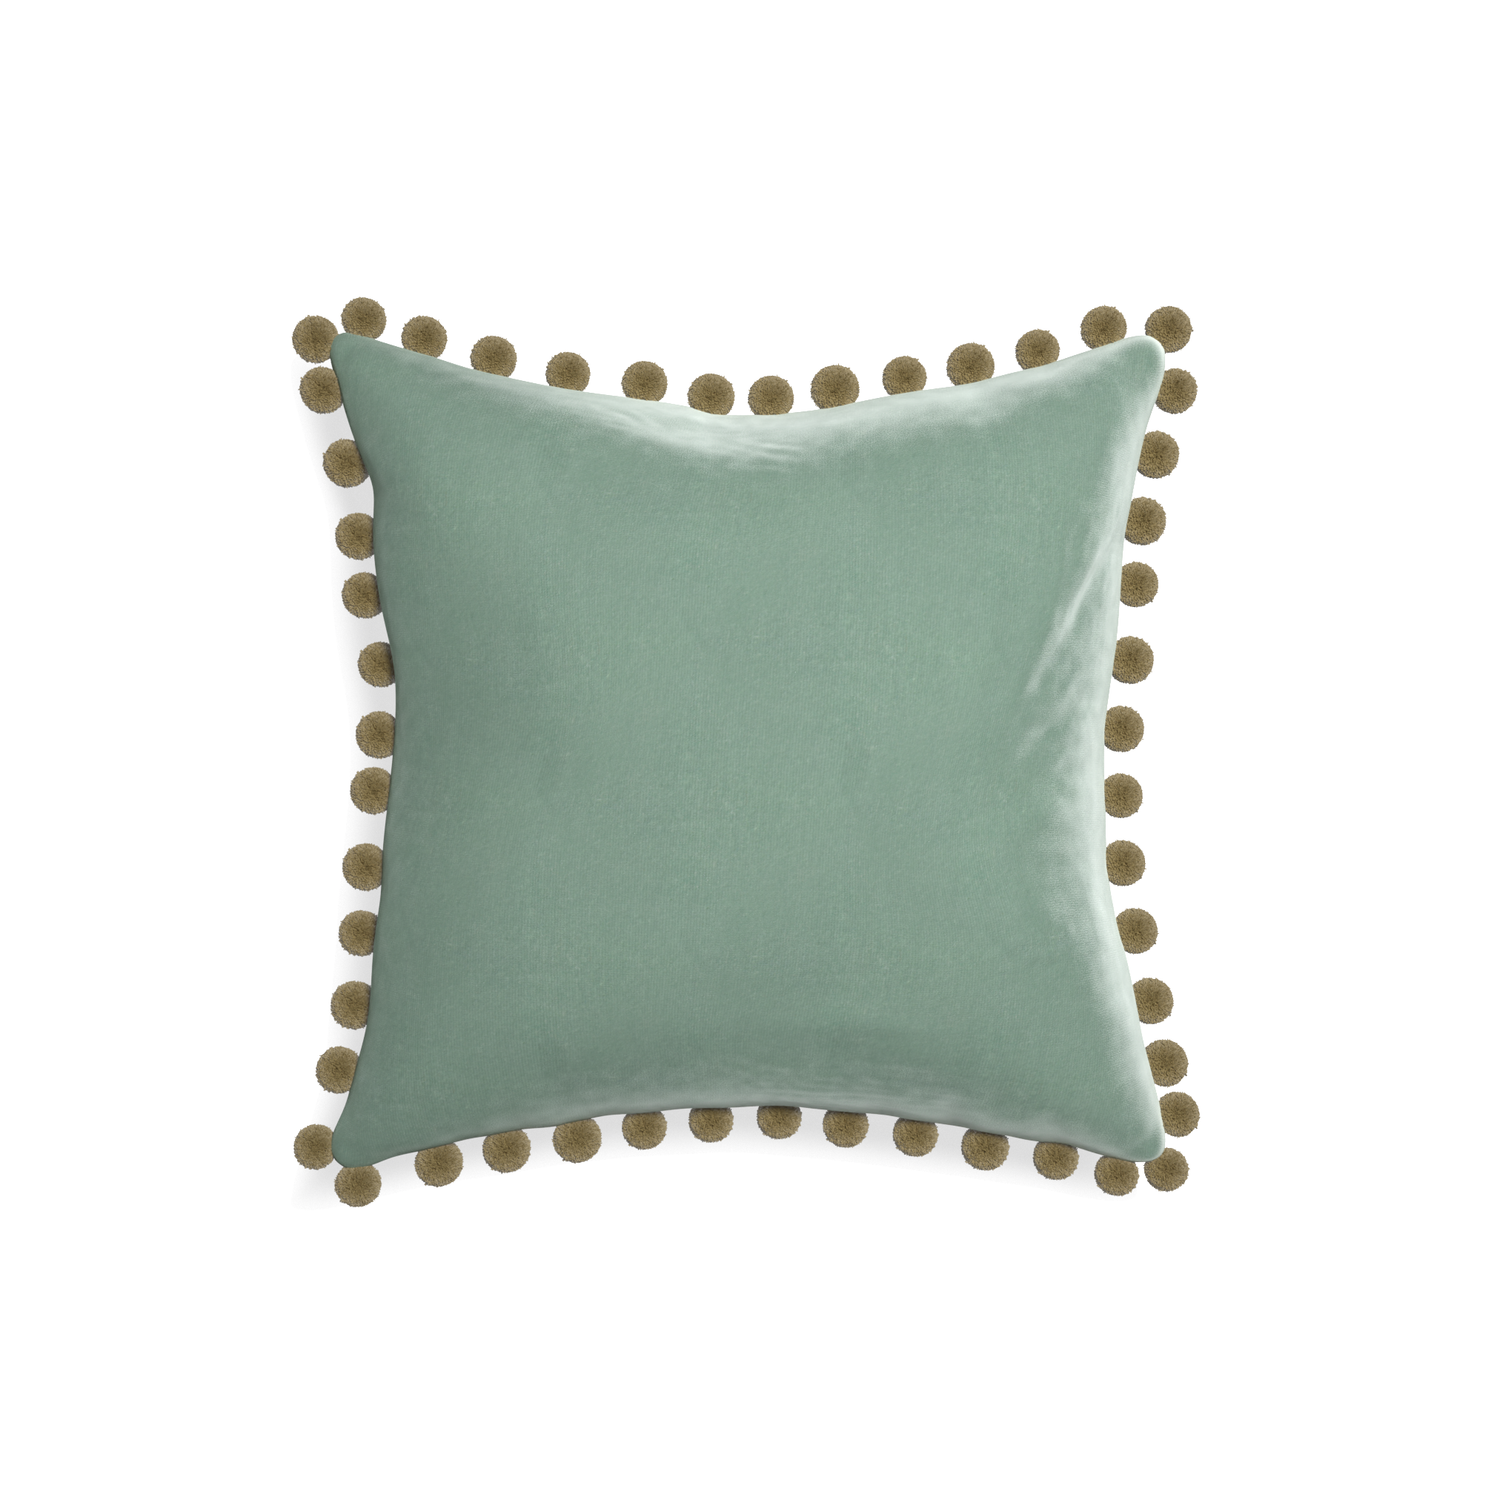 square blue green velvet pillow with olive green pom poms